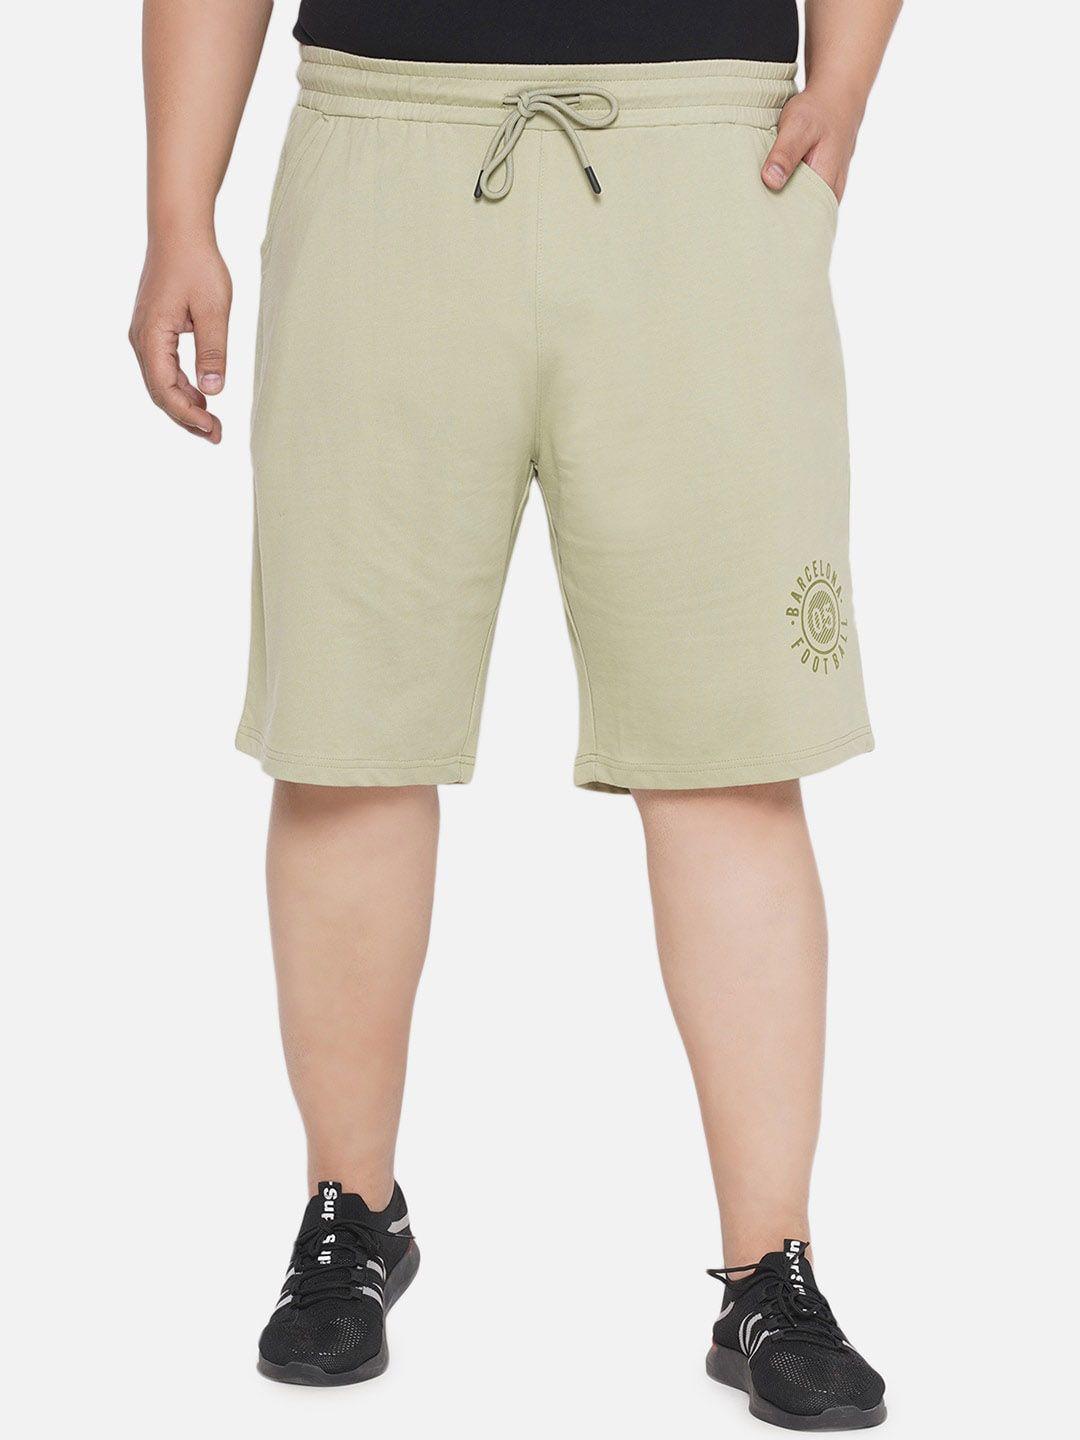 santonio men plus size mid rise pure cotton shorts